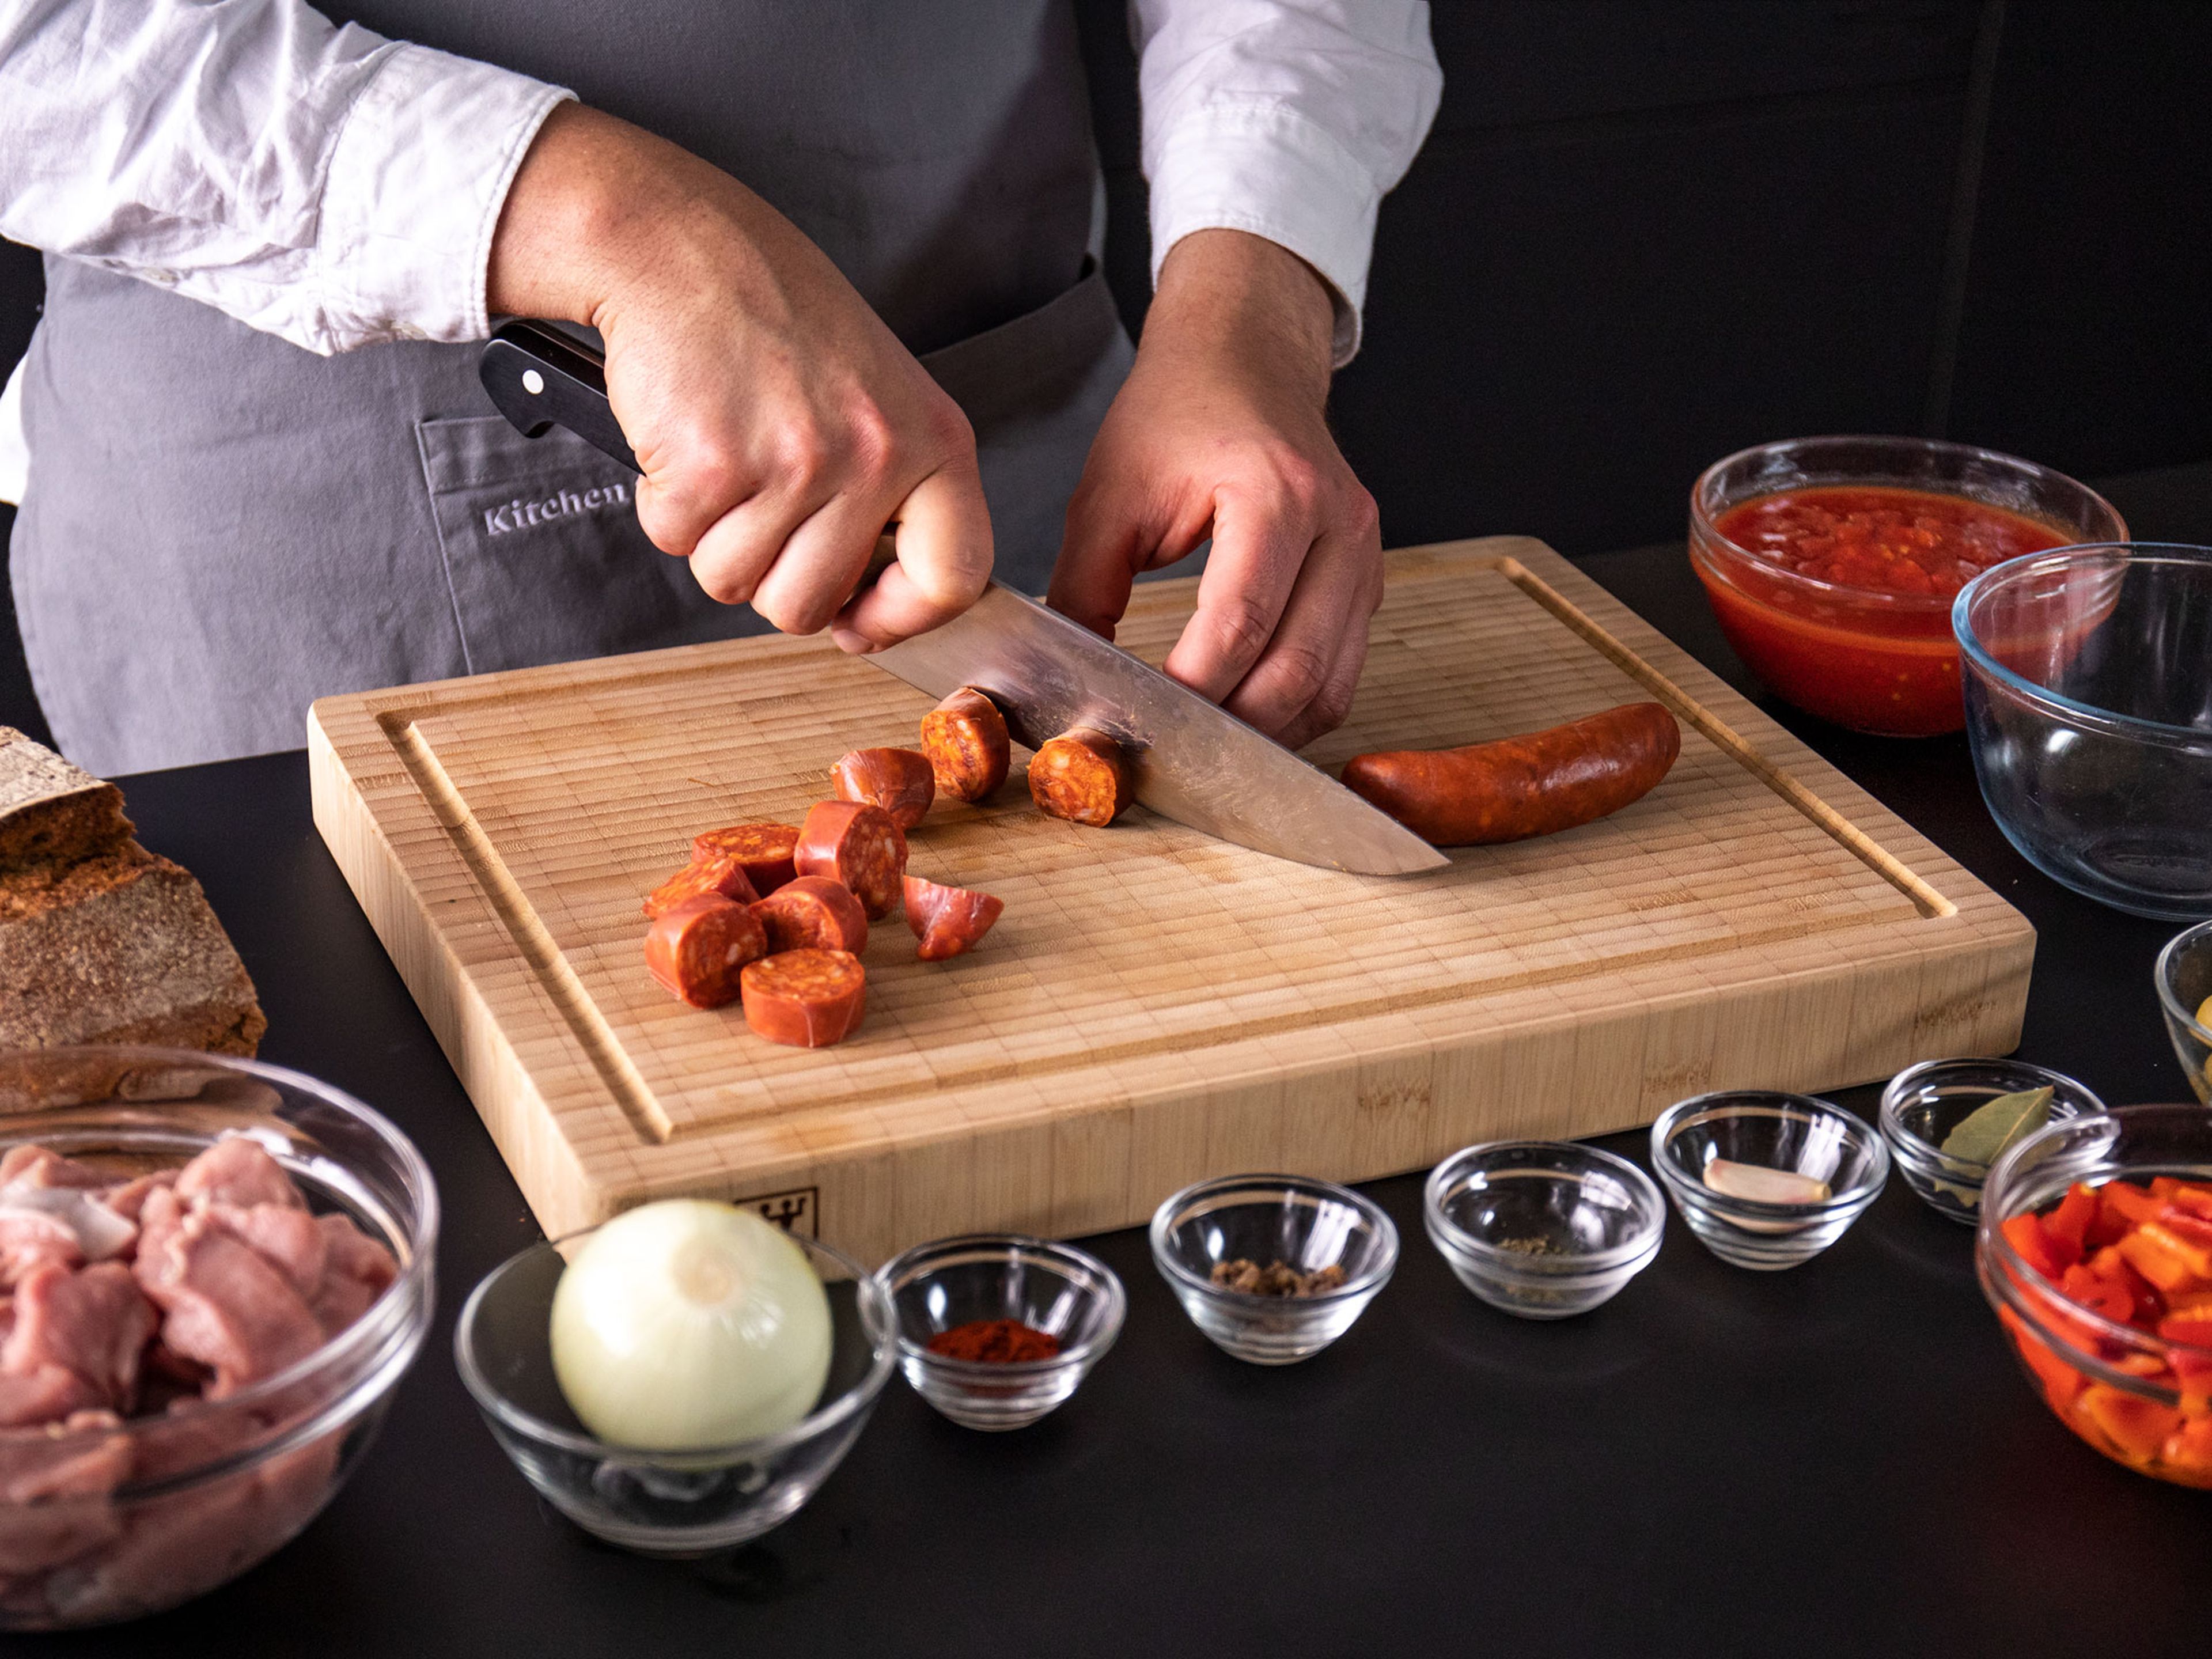 Zwiebel und Knoblauch schälen und fein hacken. Gegrillte Paprika aus dem Glas abtropfen lassen und klein schneiden. Chorizo in Scheiben schneiden und Sardellenfilets fein hacken.